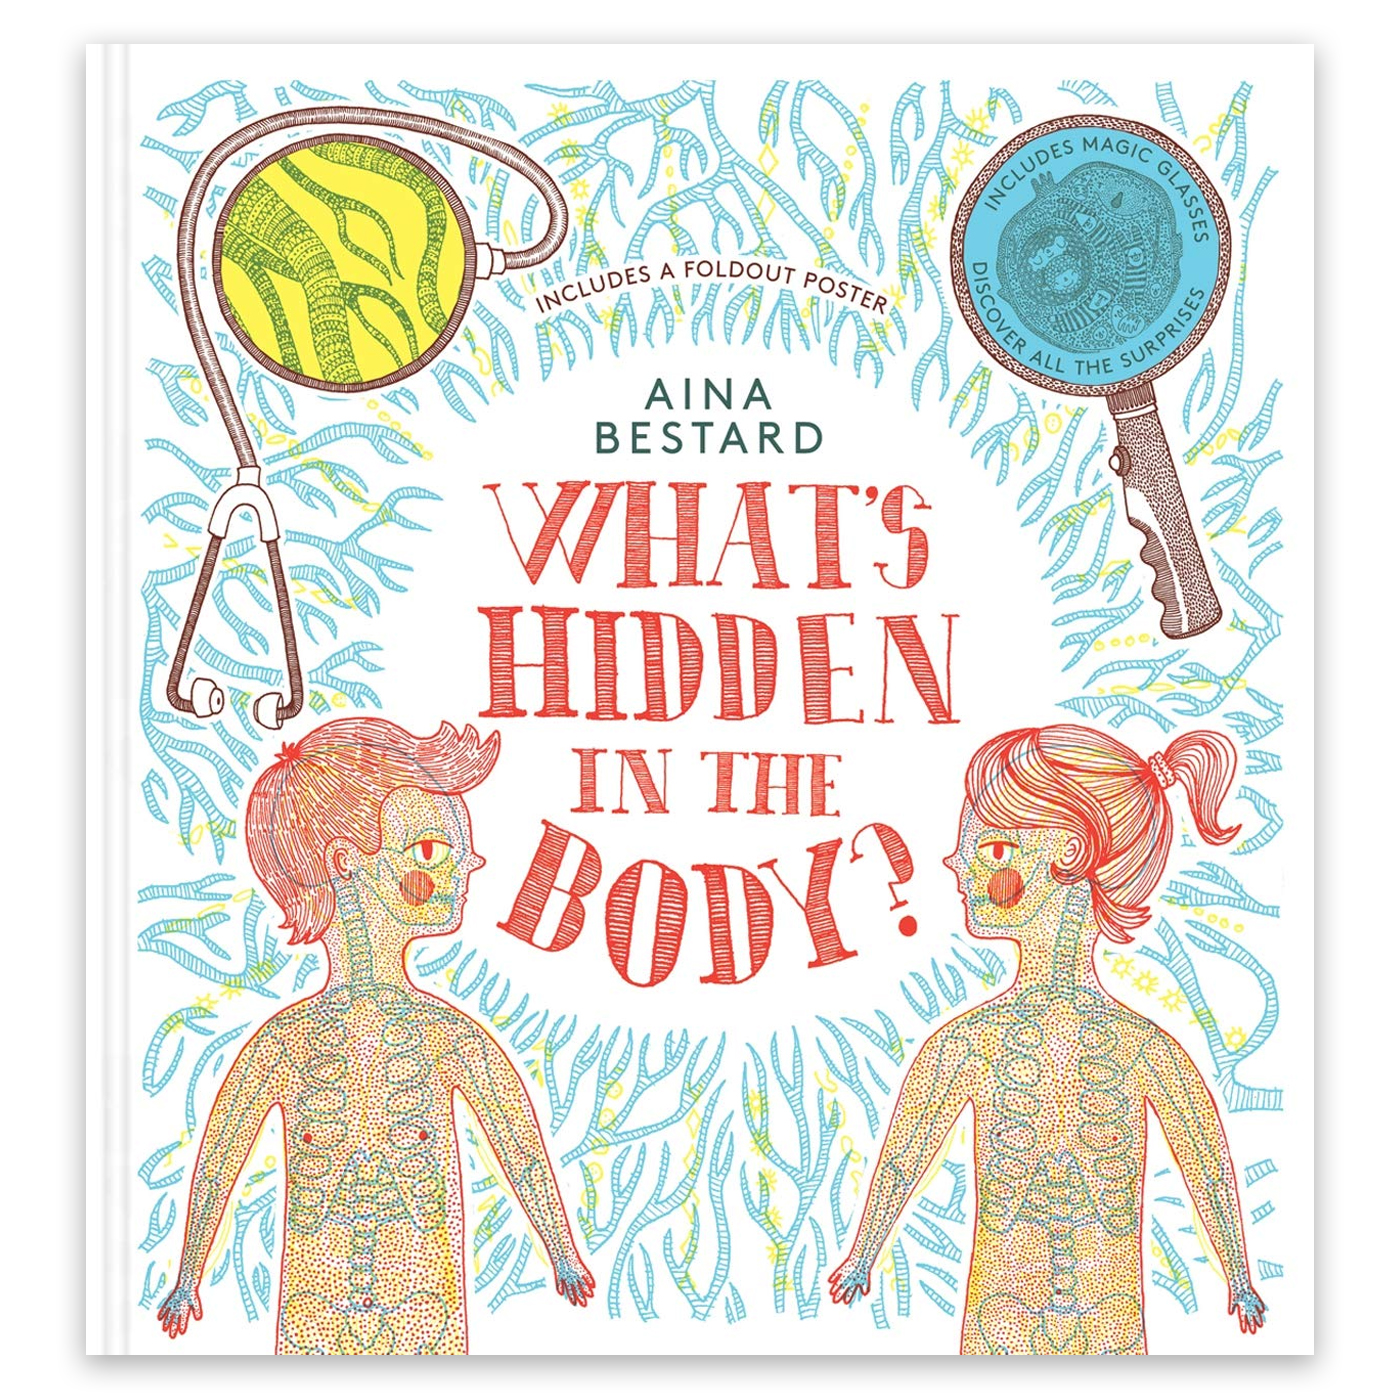  What's Hidden In The Body?